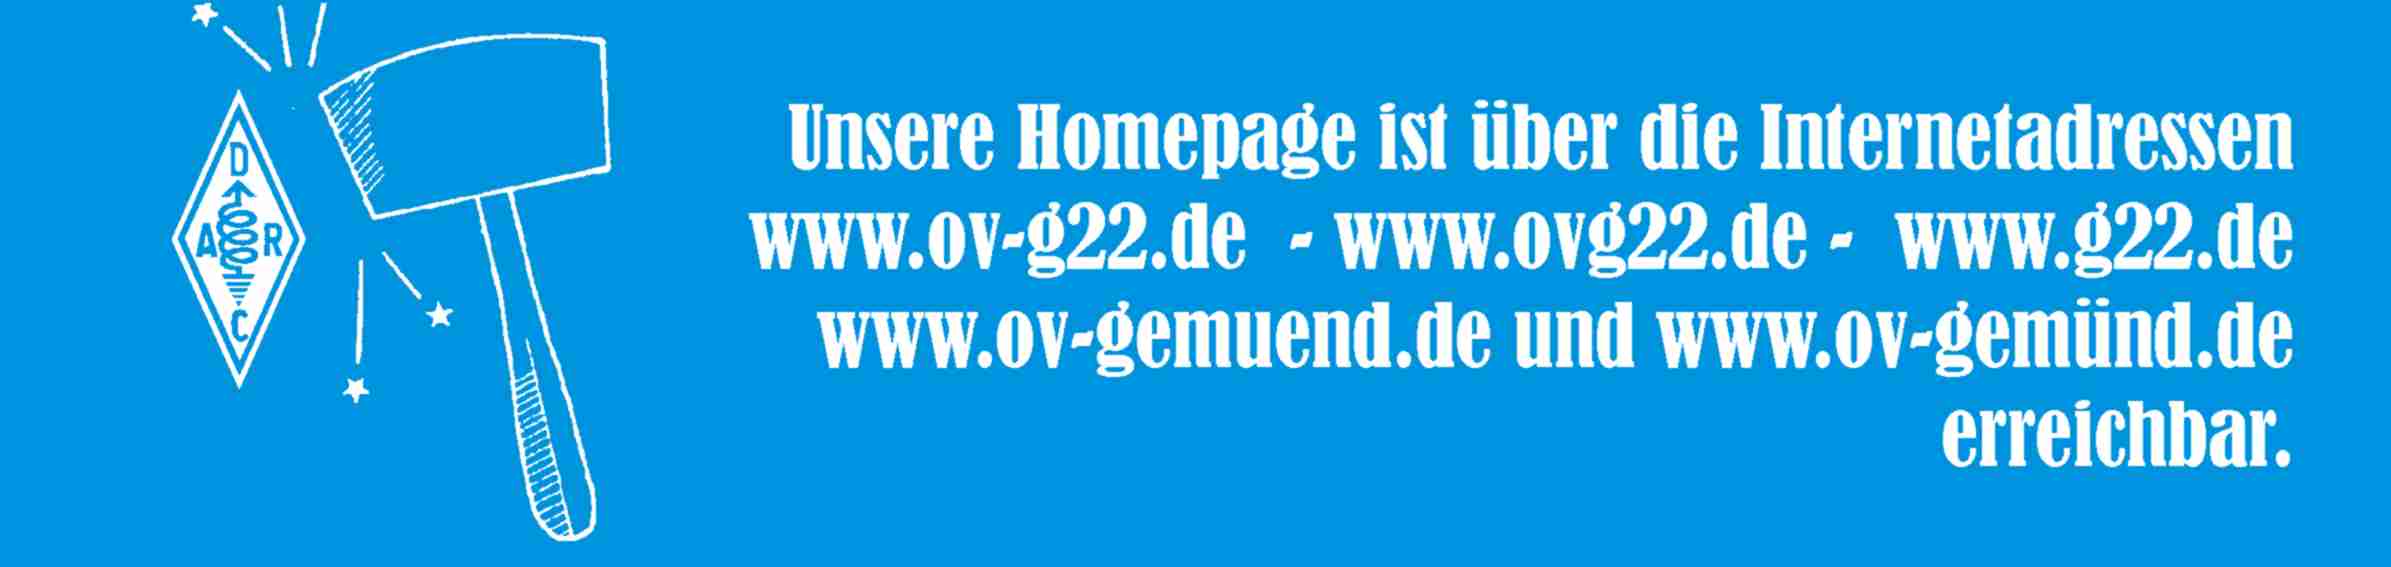 Holzhammerclub-WEB-Adressen